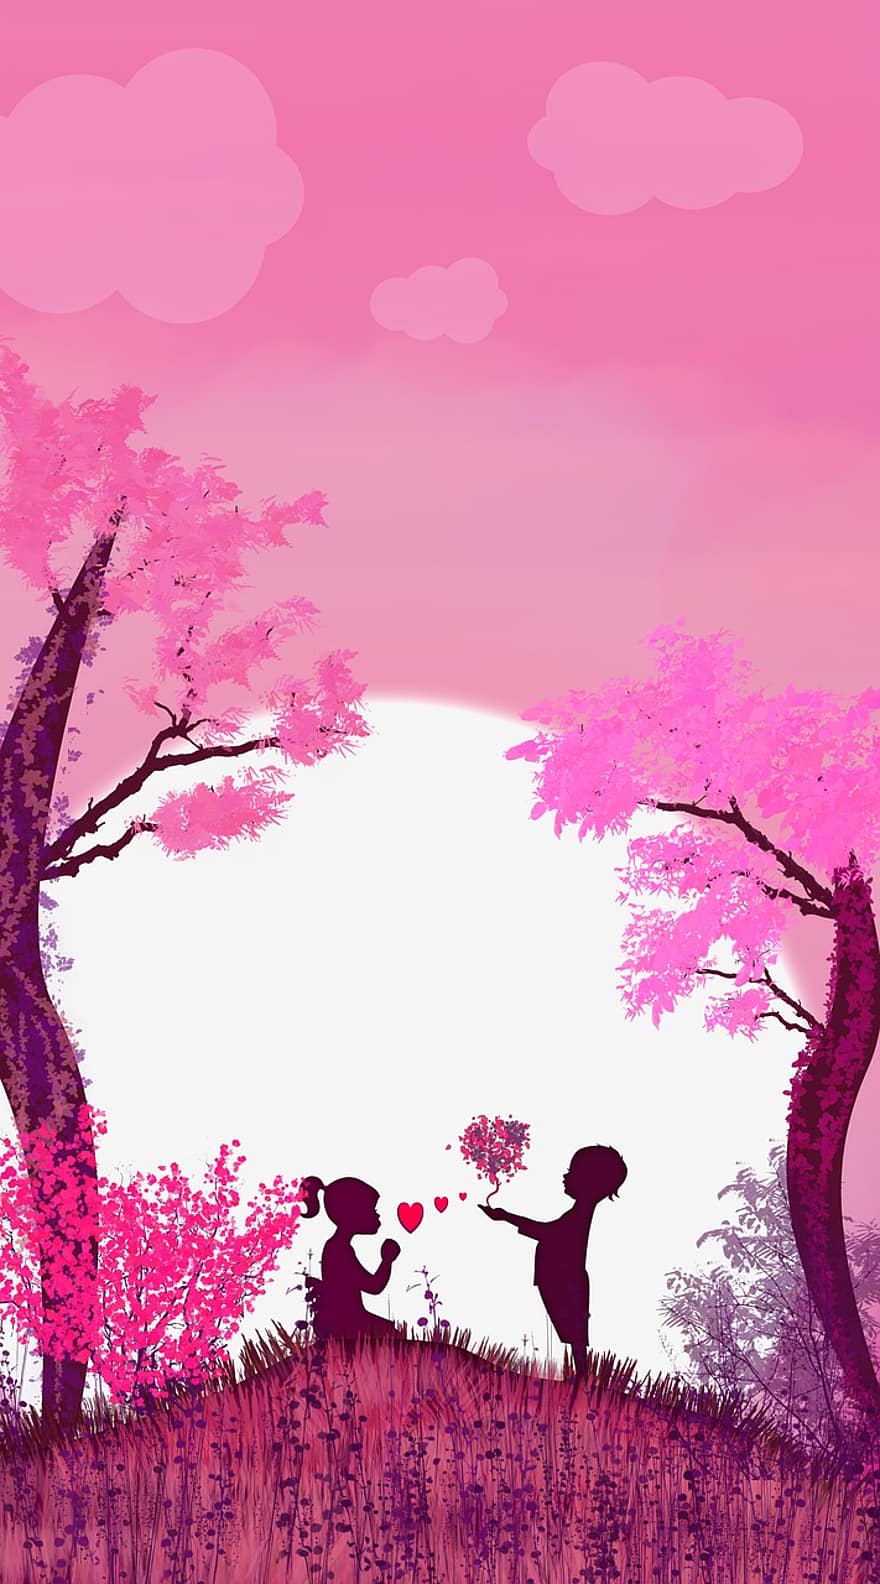 любить, пара, розовый фон, романс, дерево, вектор, иллюстрация, заход солнца, пейзаж, фоны, силуэт